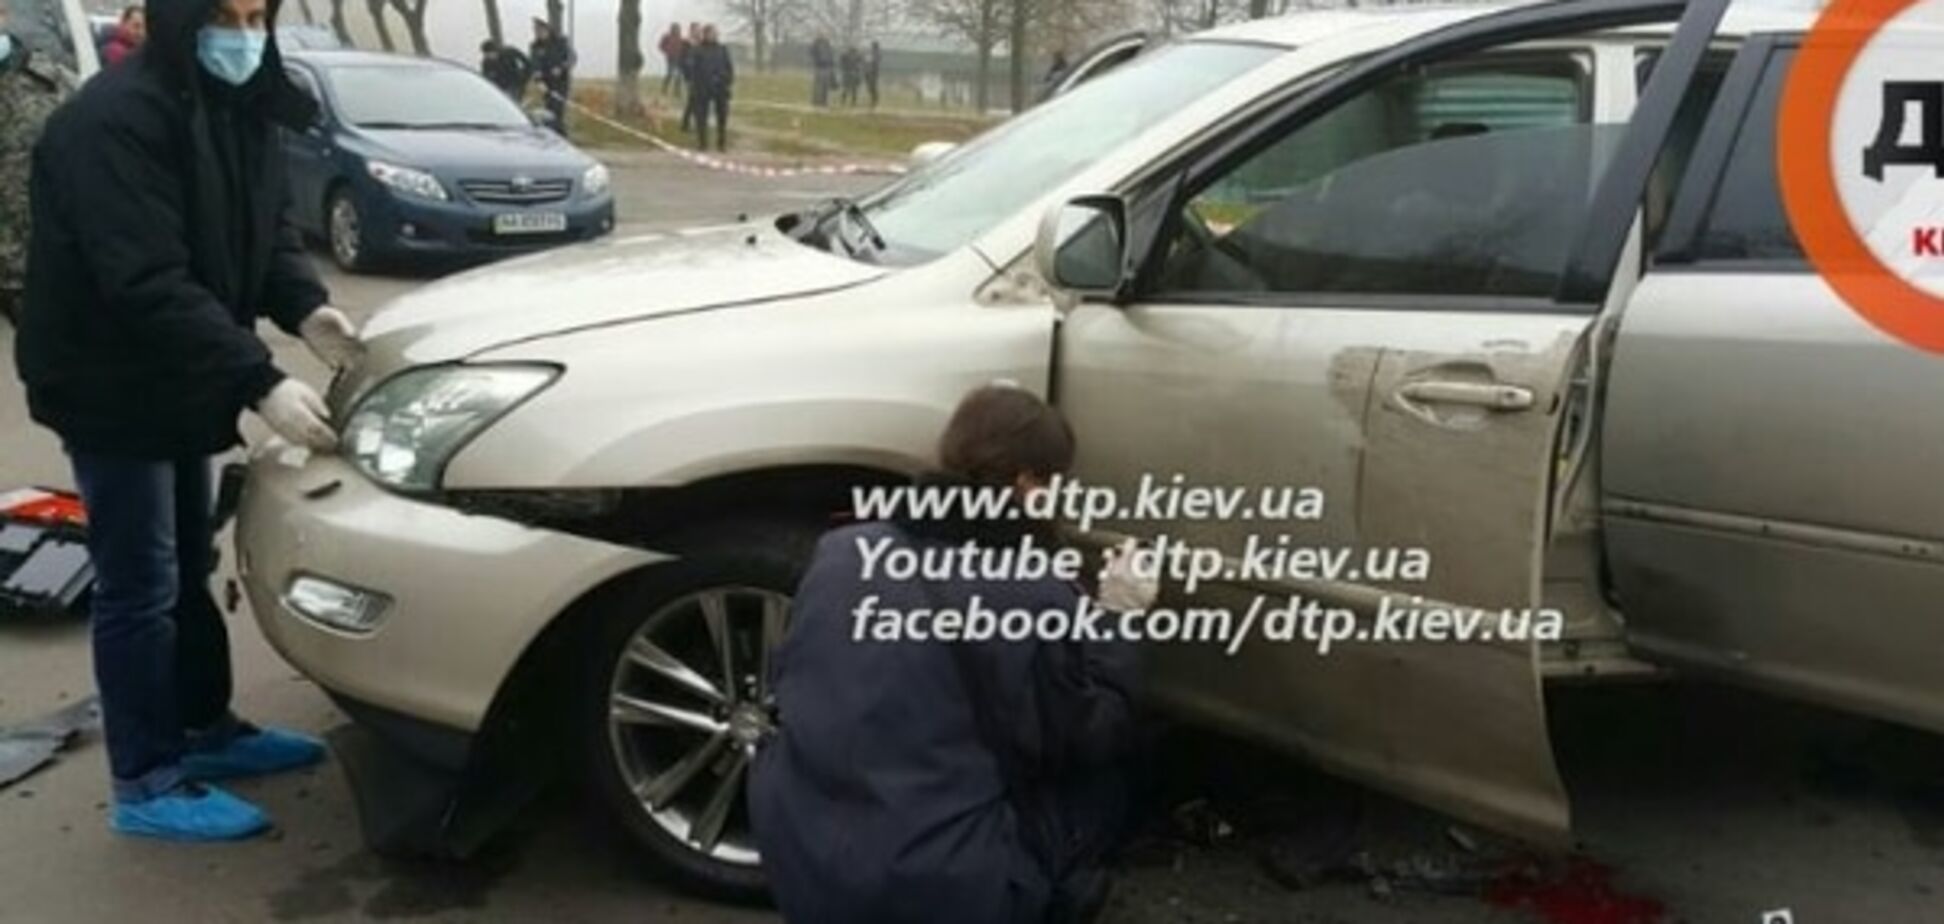 Появились жуткие фото с места взрыва автомобиля в Киеве